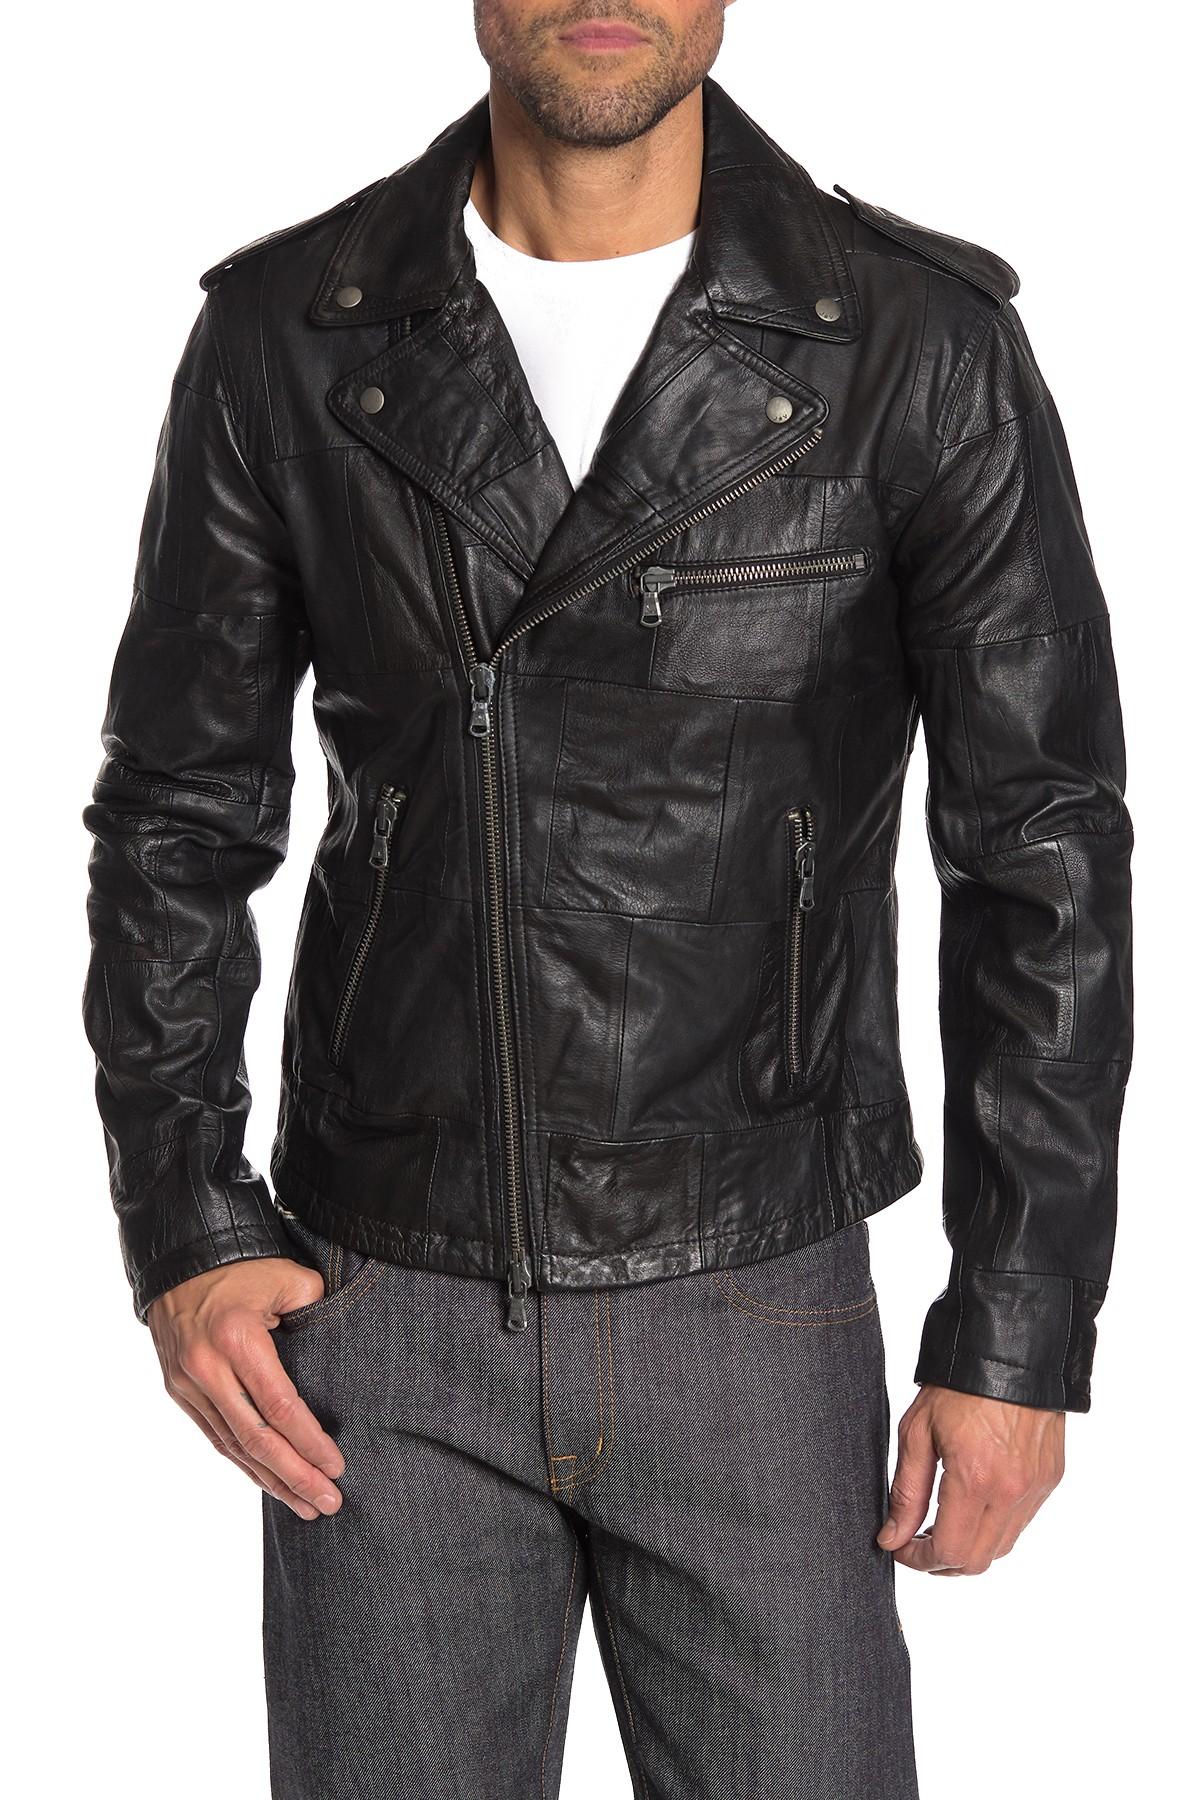 John Varvatos Patchwork Leather Moto Jacket in Black for Men - Lyst